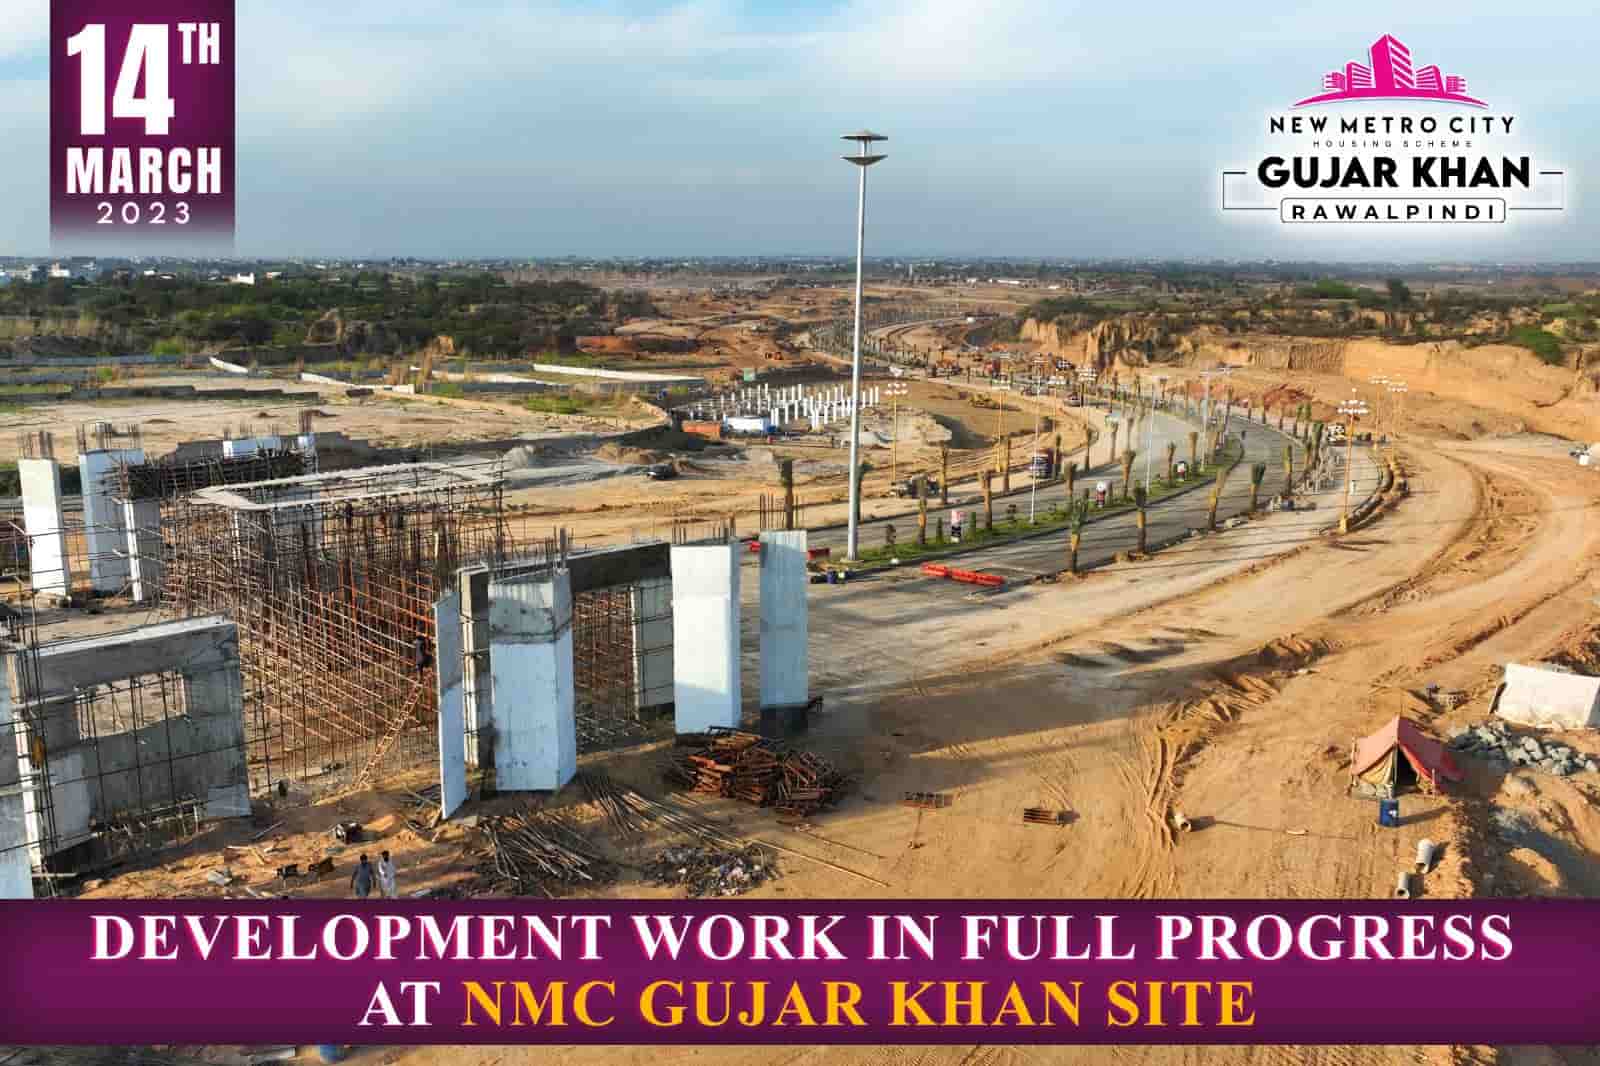 New Metro City Gujar Khan Rawalpindi development work